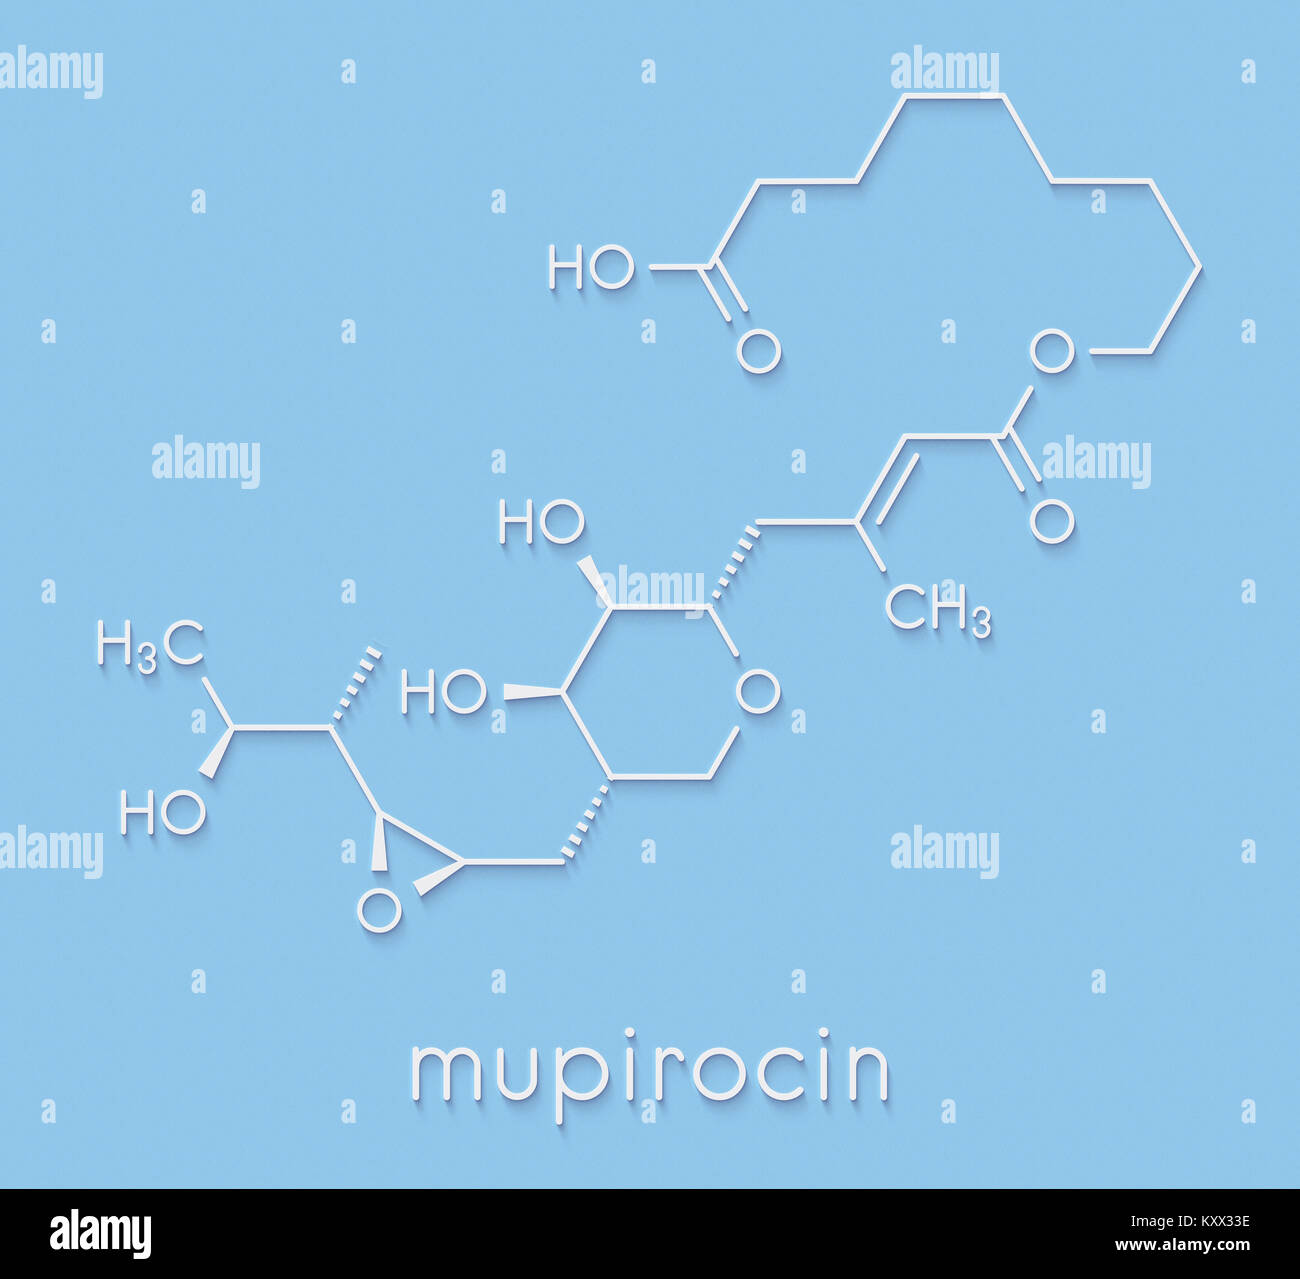 Mupirocin (pseudomonic Säure) Antibiotikum Medikament Molekül. Aktuell gegen gram-positive Bakterien verwendet. Skelettmuskulatur Formel. Stockfoto